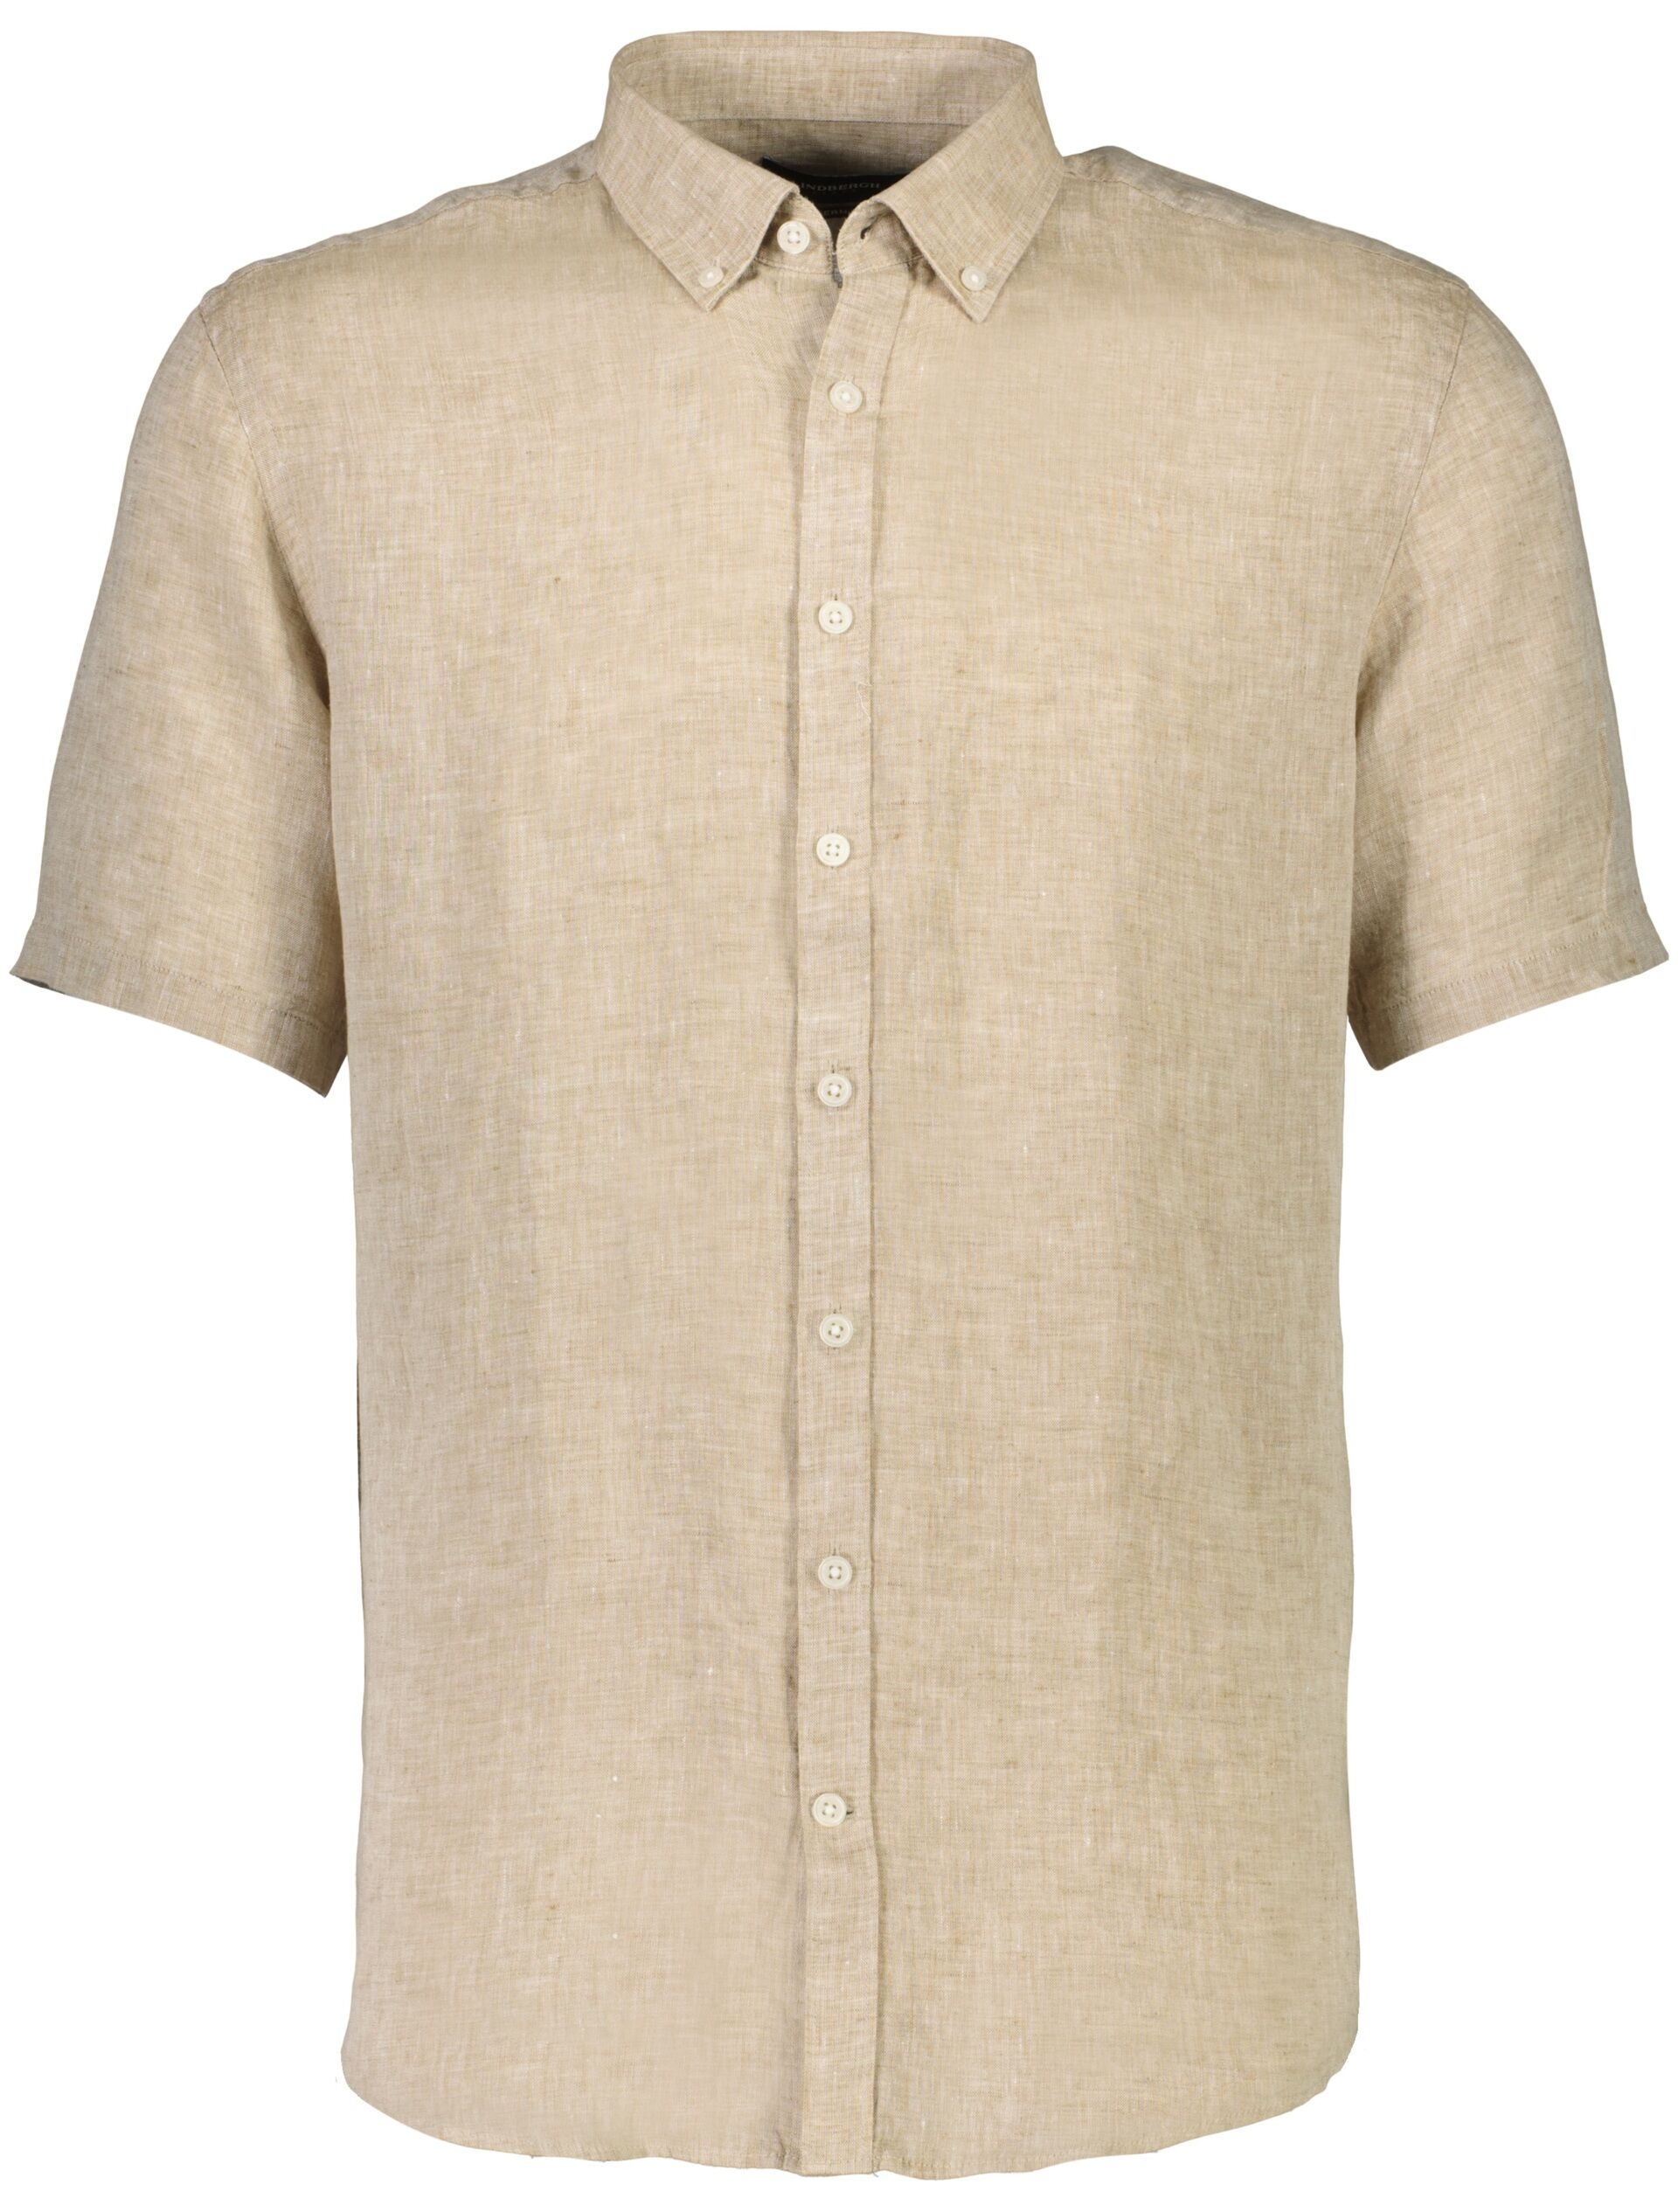 Linen shirt Linen shirt Sand 30-240085